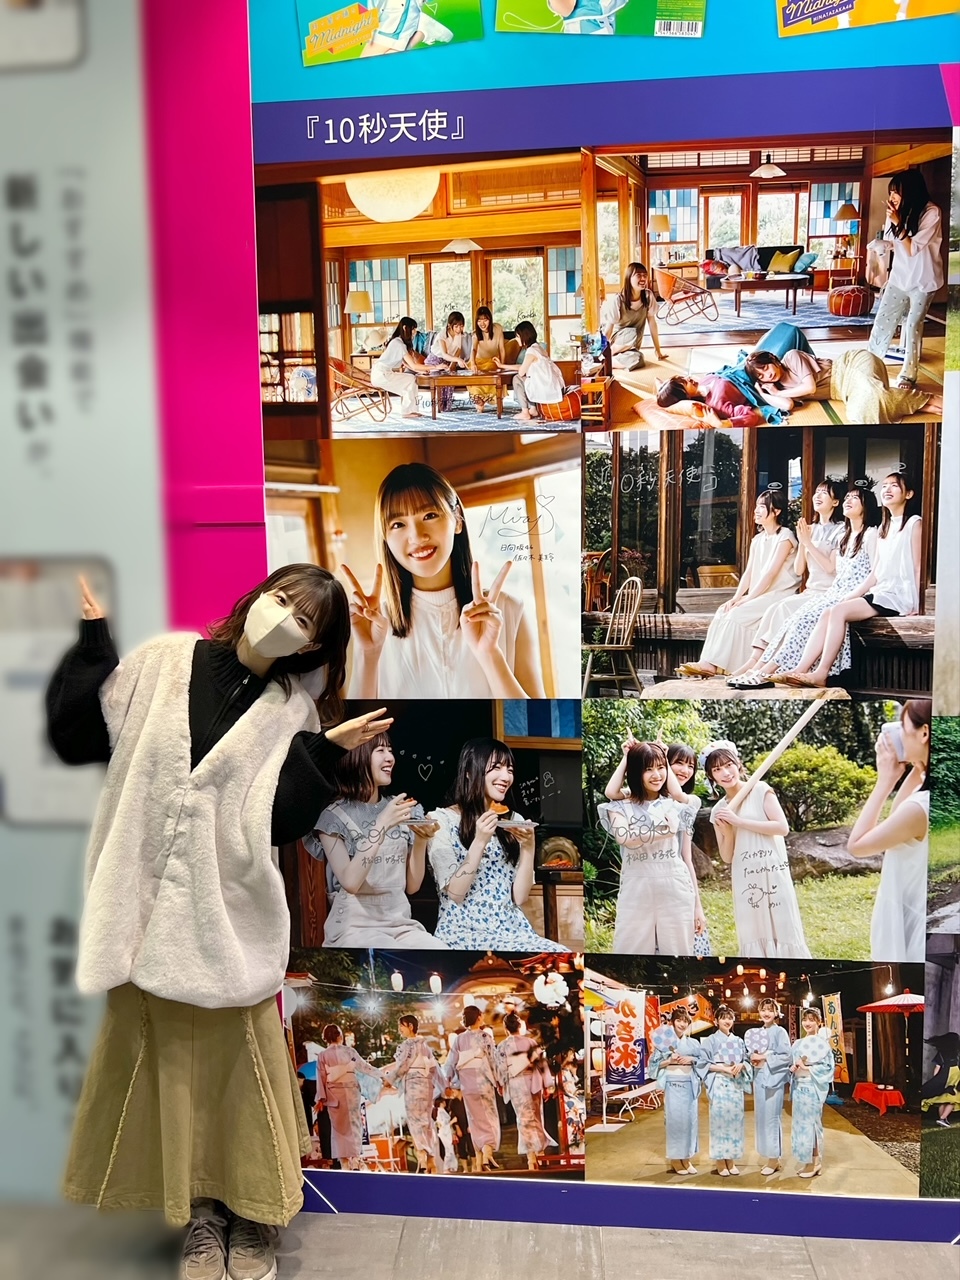 シブツタ パネル展 応募券10枚 日向坂46 上村ひなの 写真集 「そのままで」